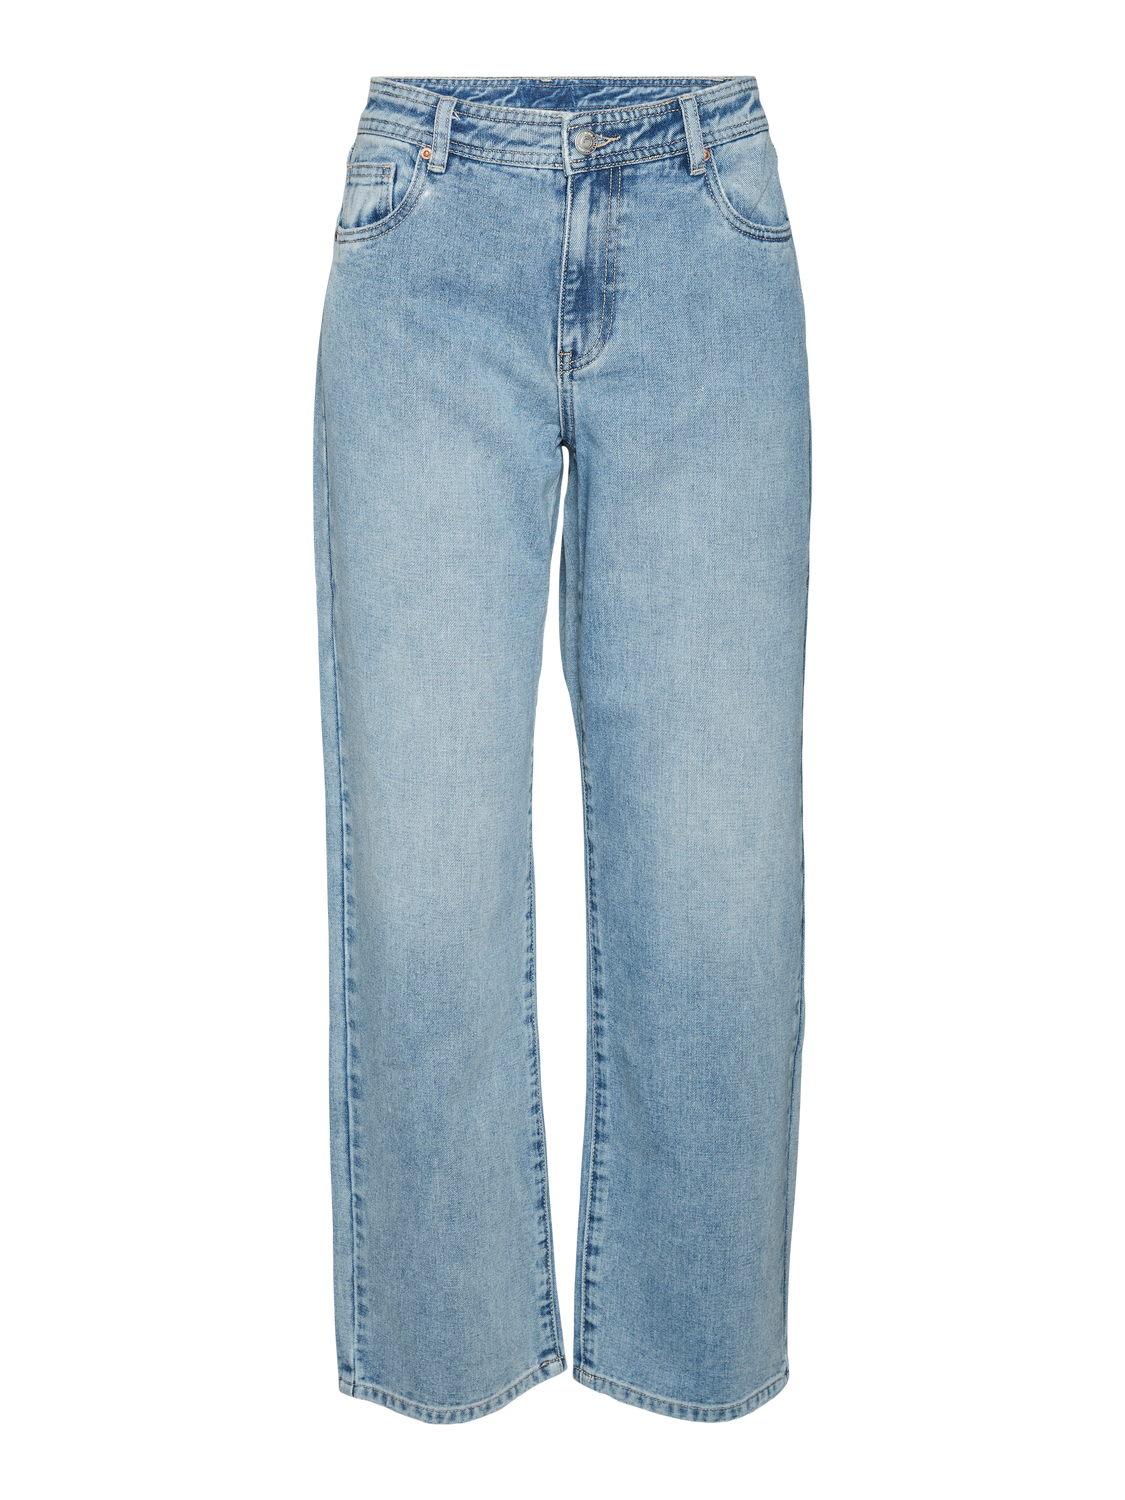 VMEVELYN Jeans - Light Blue Denim